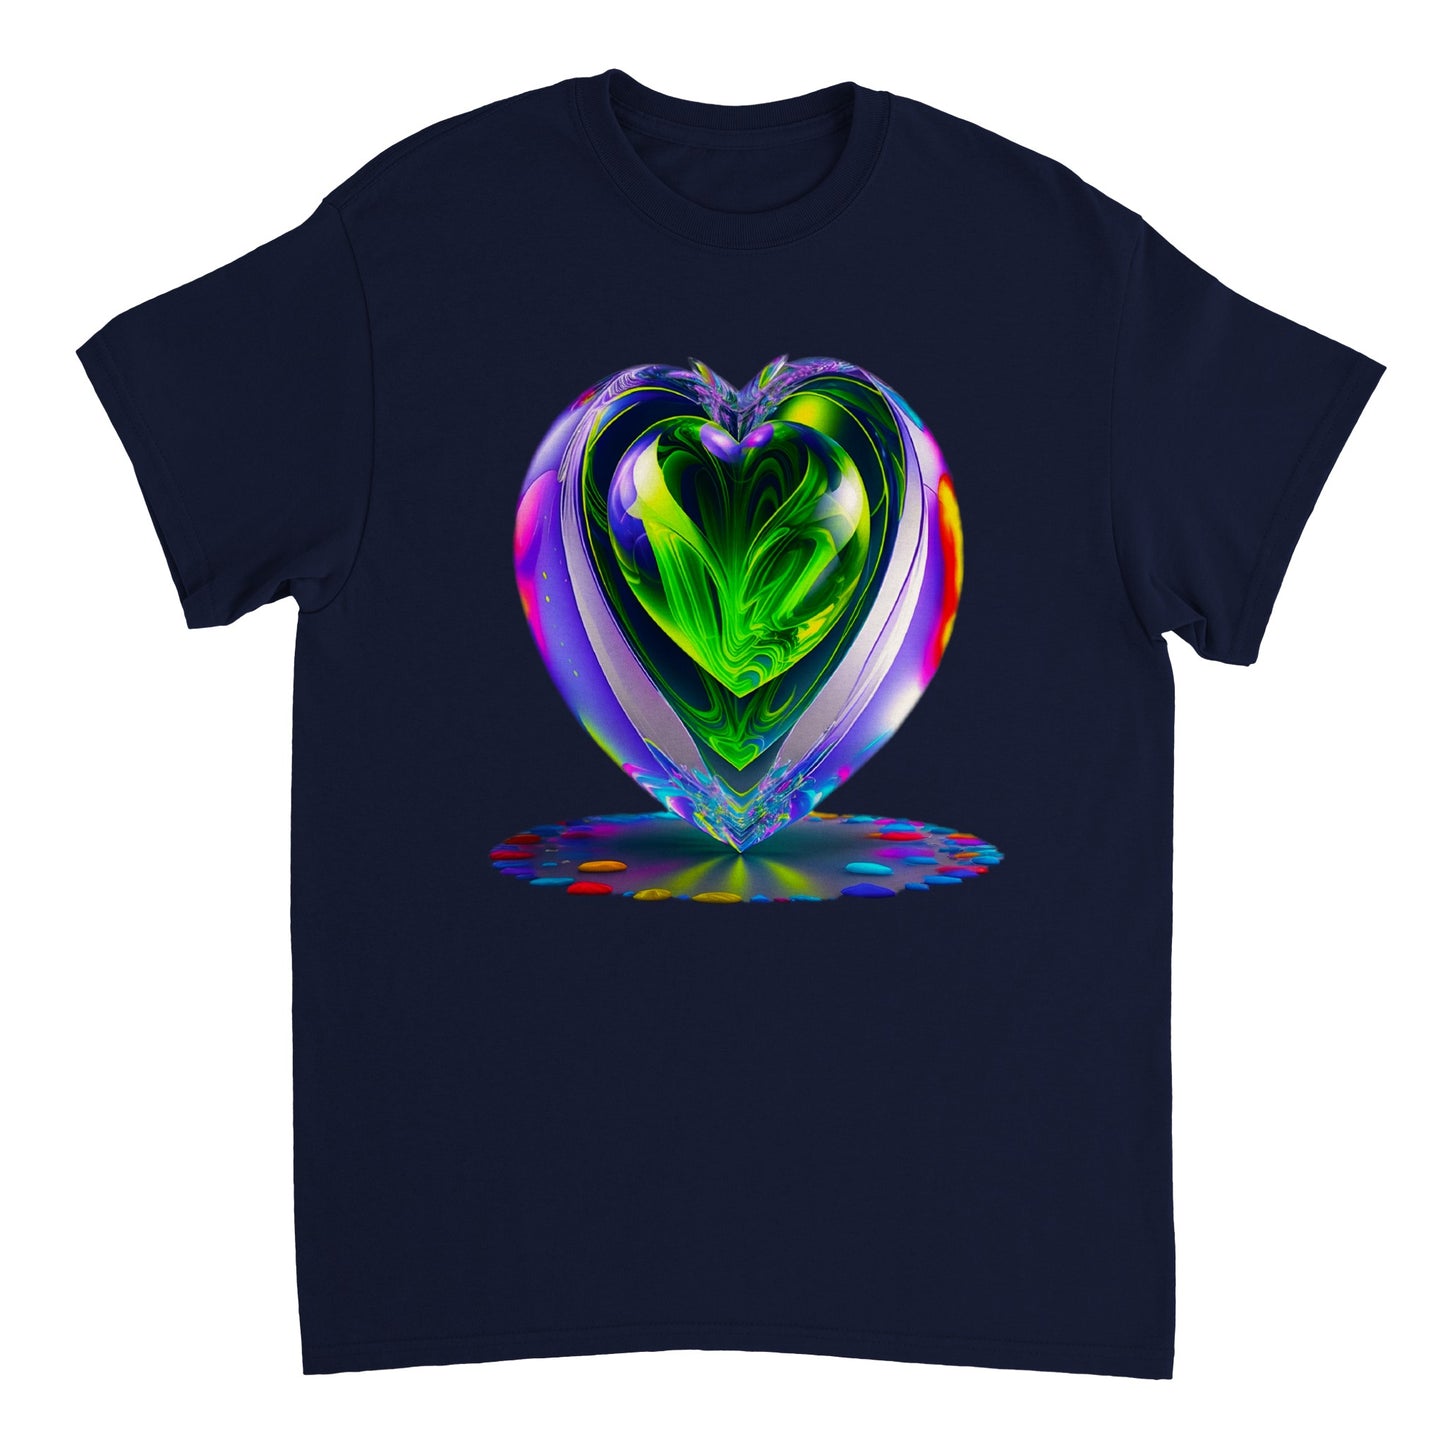 Love Heart - Heavyweight Unisex Crewneck T-shirt 62